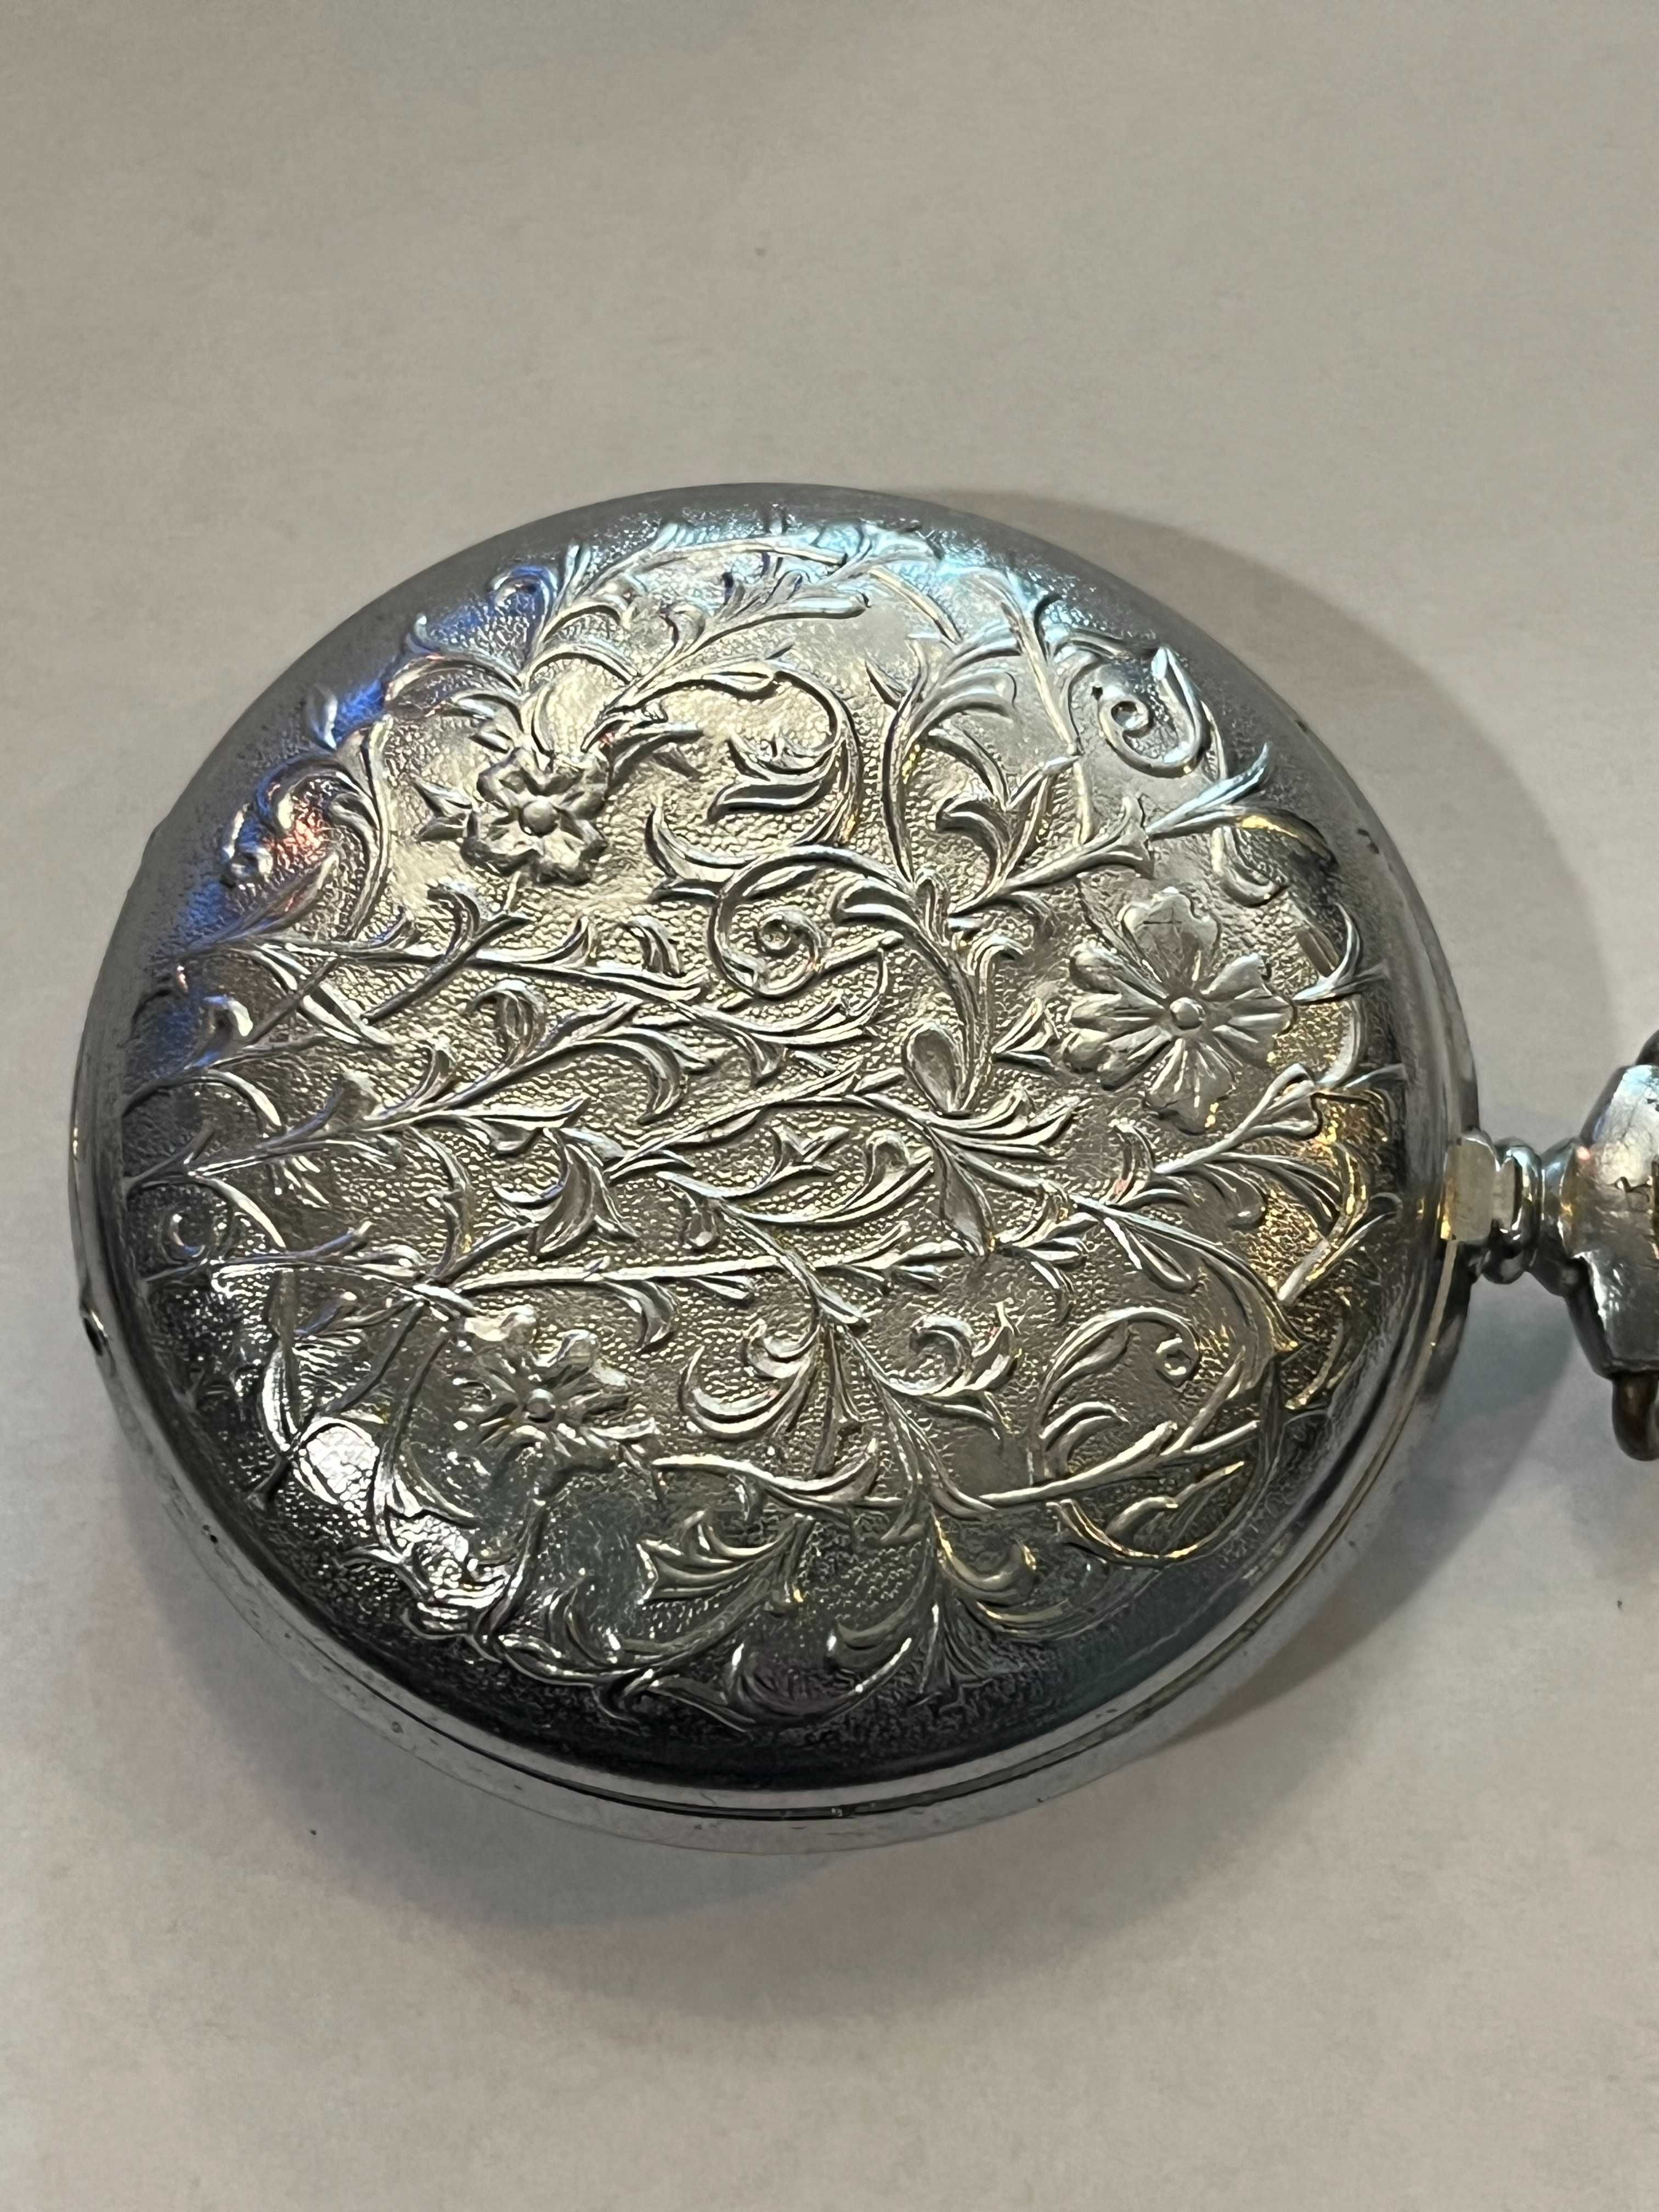 Rosyjski zegarek kopertowy Molnija zdobiony ornamentami